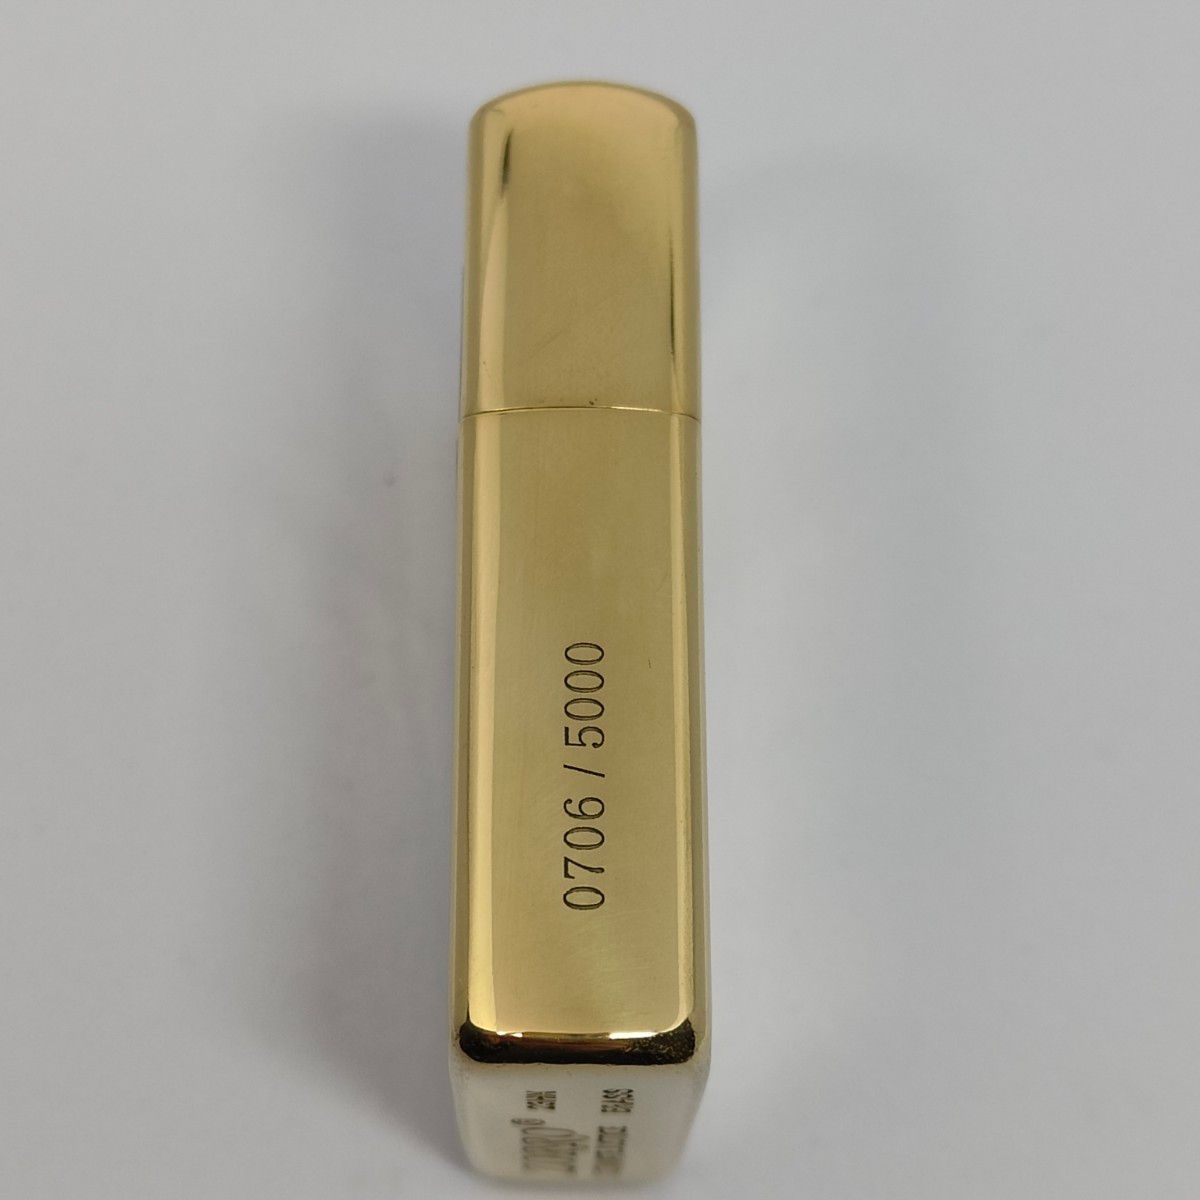 ZORRO オイルライター 素材:真鍮 ビキニBikini 限定番号